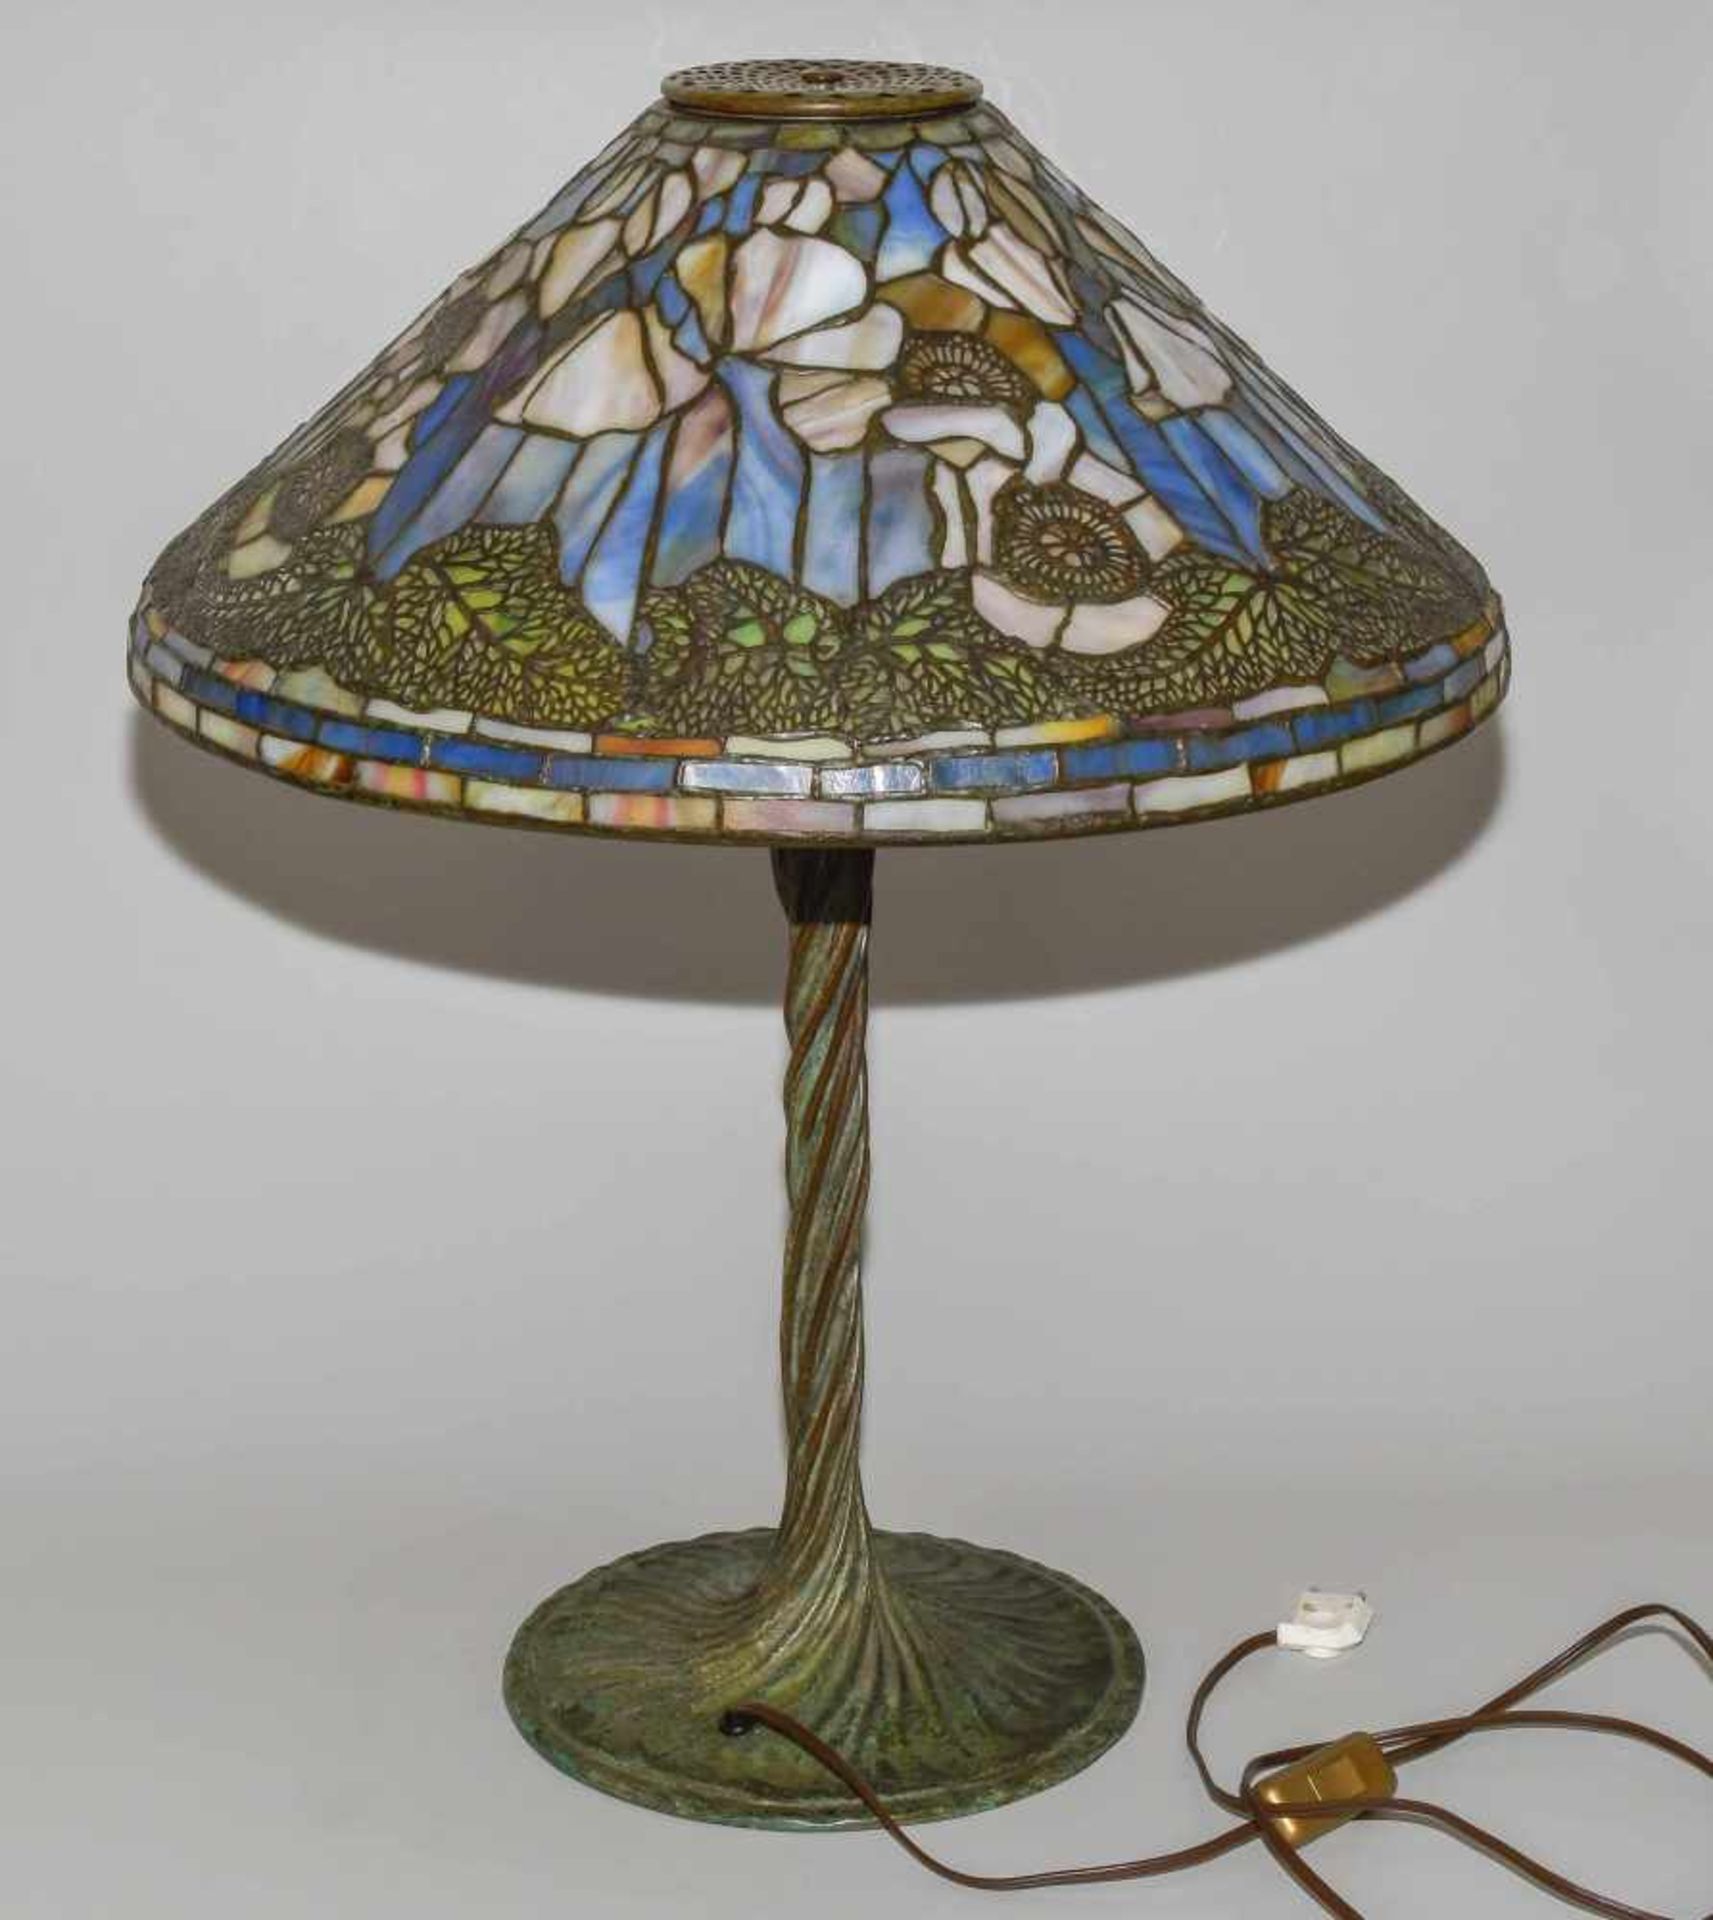 Tiffany Studios New YorkTischlampe "Poppy". Schirm aus "leaded Glass", weisser Mohn mit Blättern, - Image 20 of 24